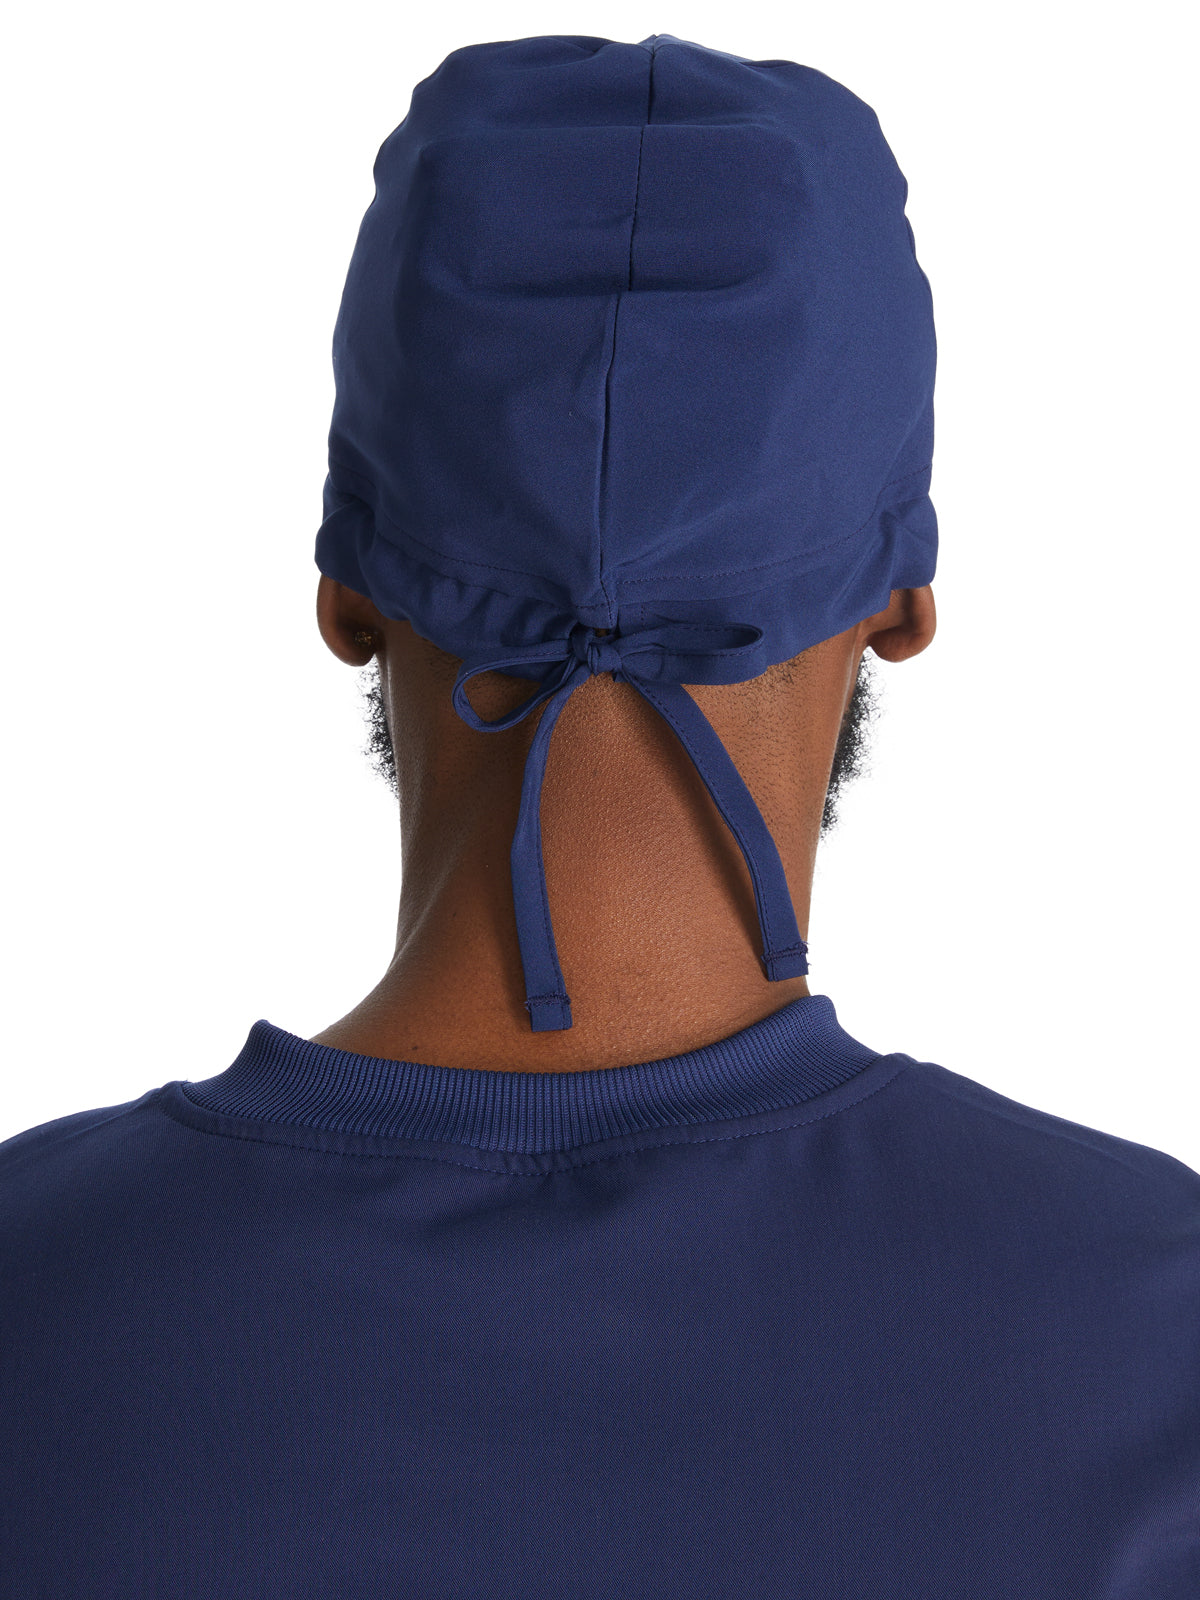 Unisex 4-Way Stretch Scrub Hat